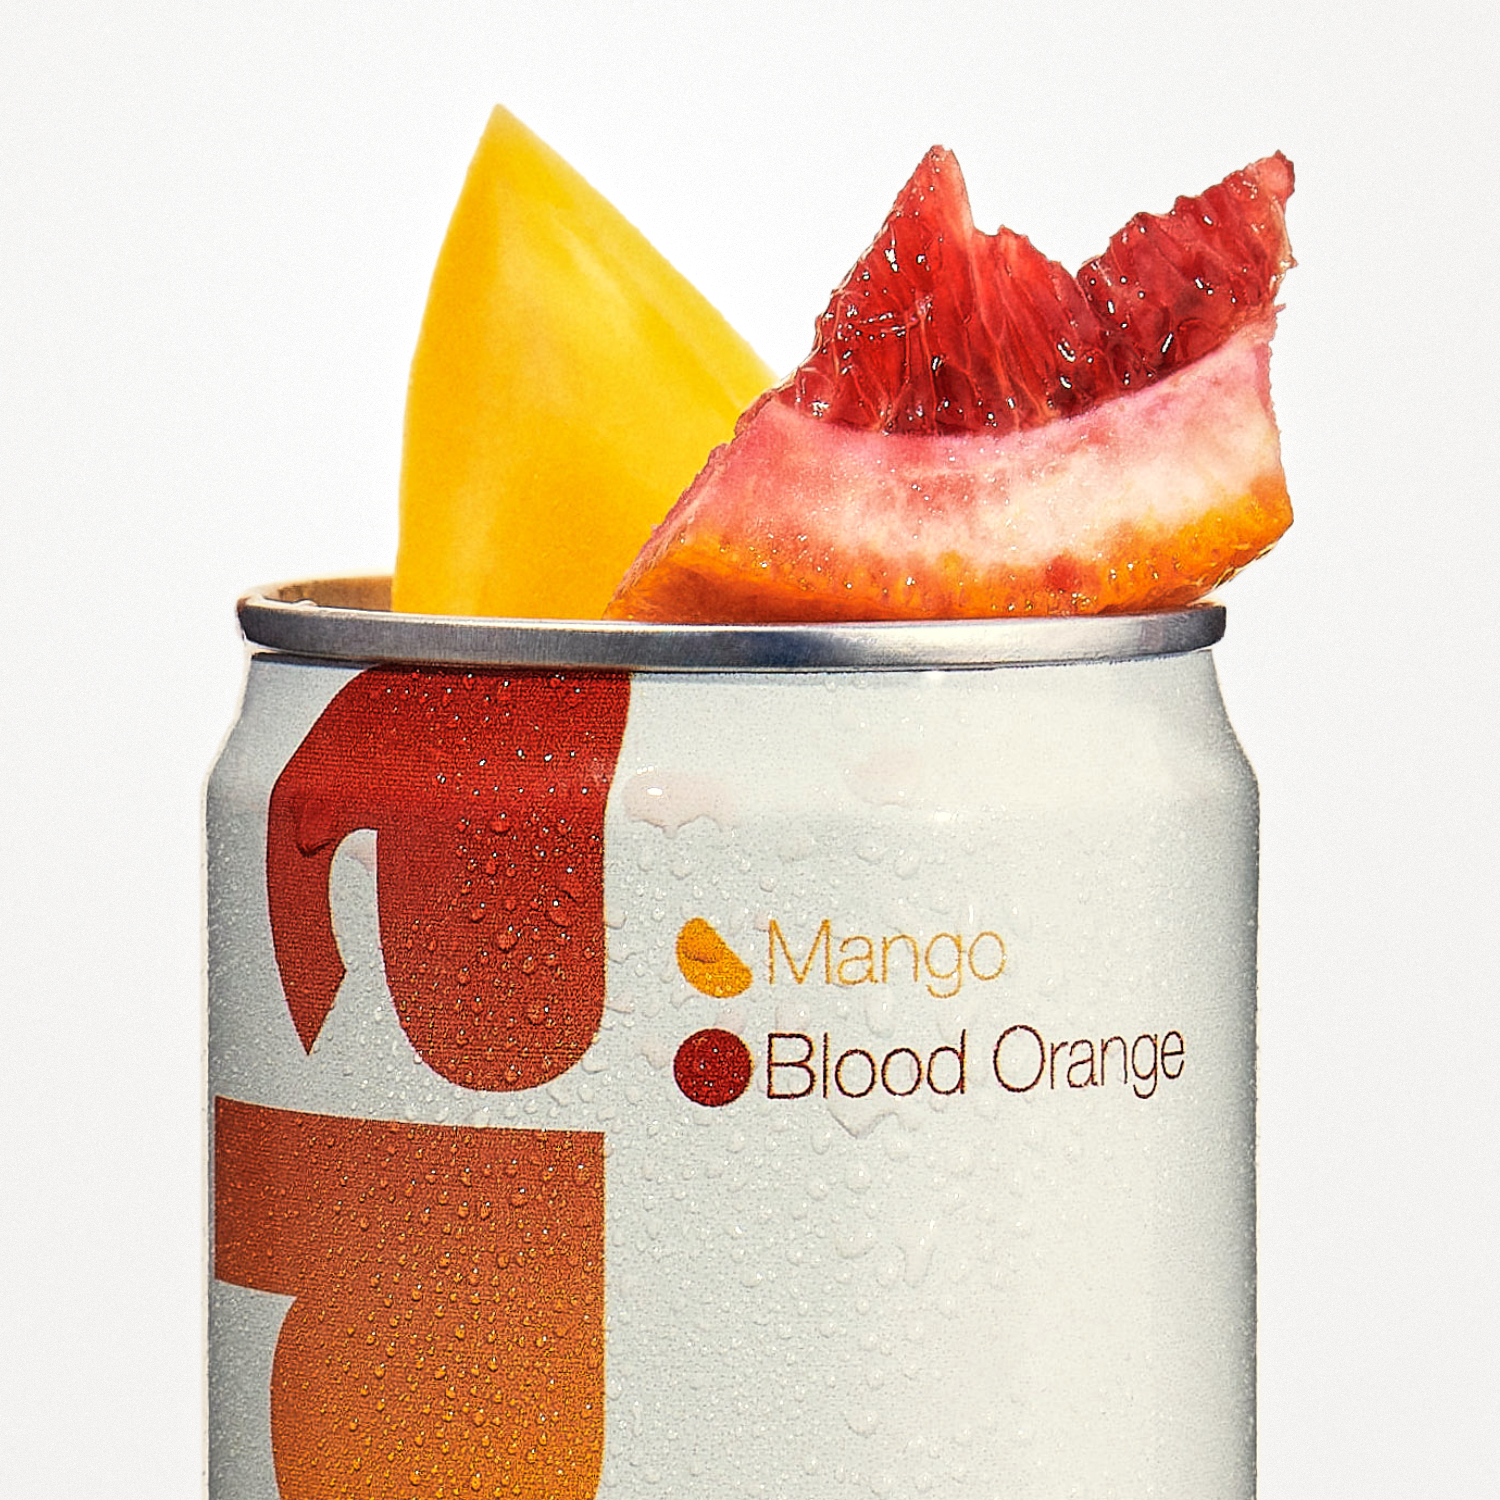 Mango Blood Orange